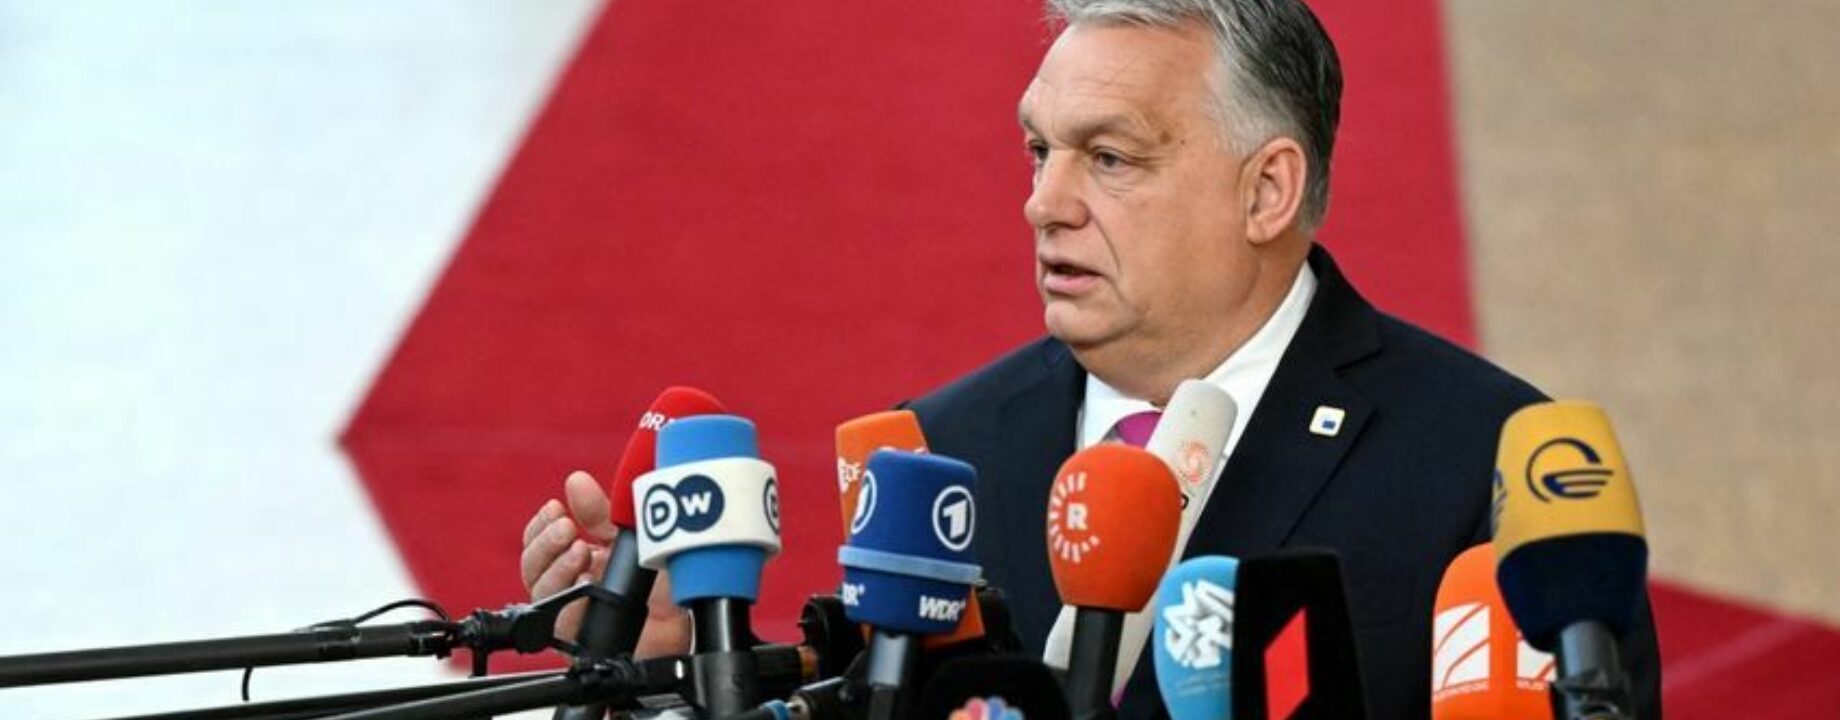 Orbán a sajtótájékoztatón